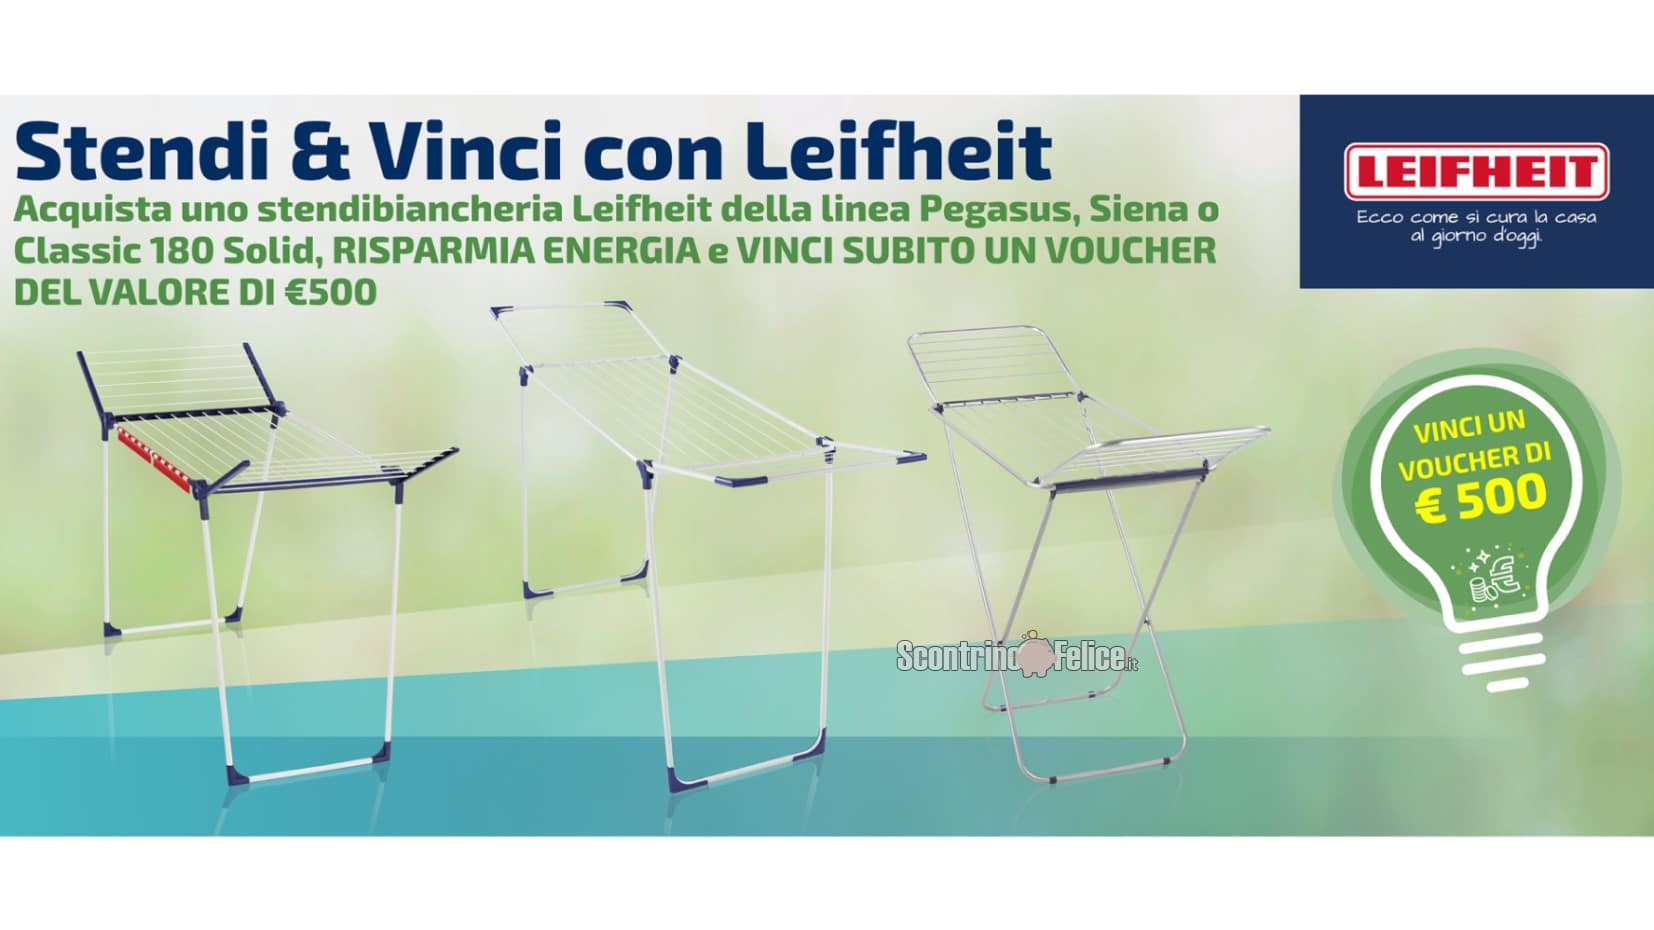 Concorso Leifheit "Stendi&Vinci": in palio voucher da 500 euro e 1.000 euro!